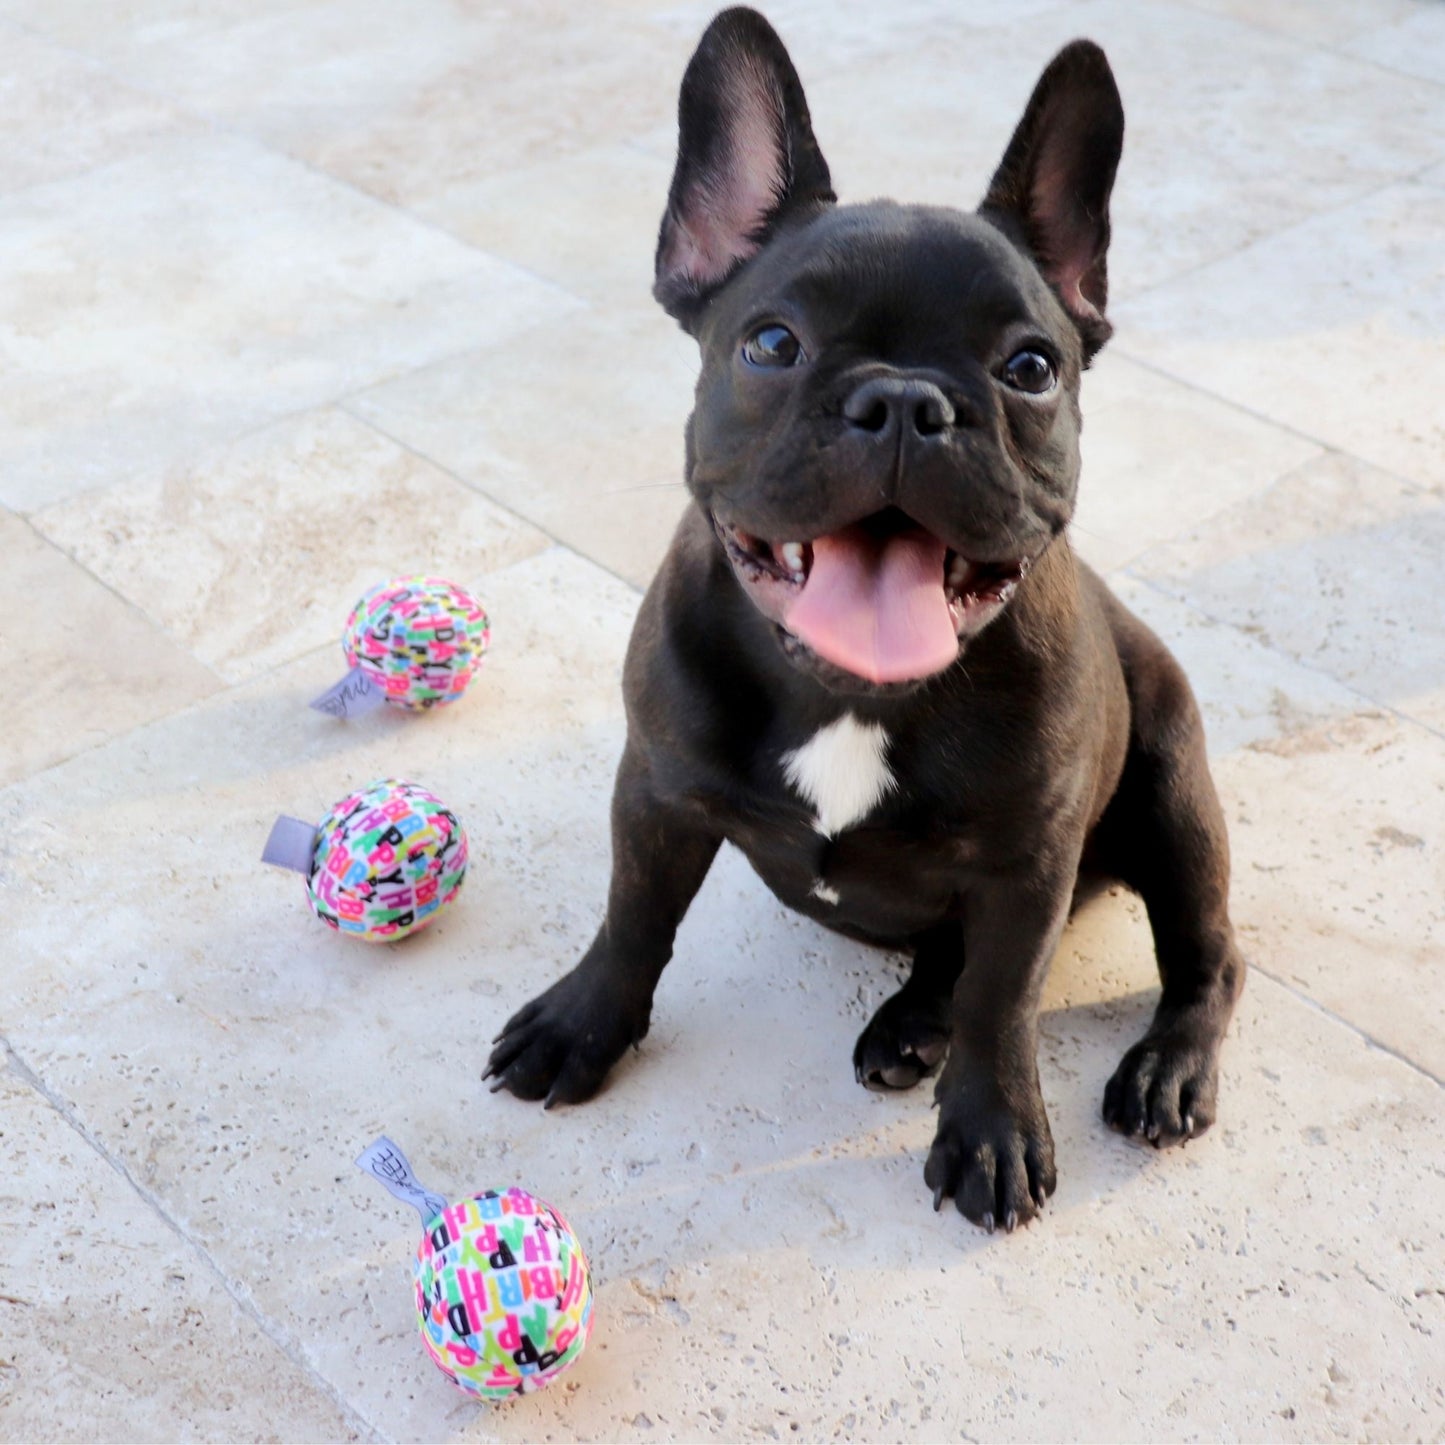 Midlee Plush Birthday Balls Dog Toy- Set of 3